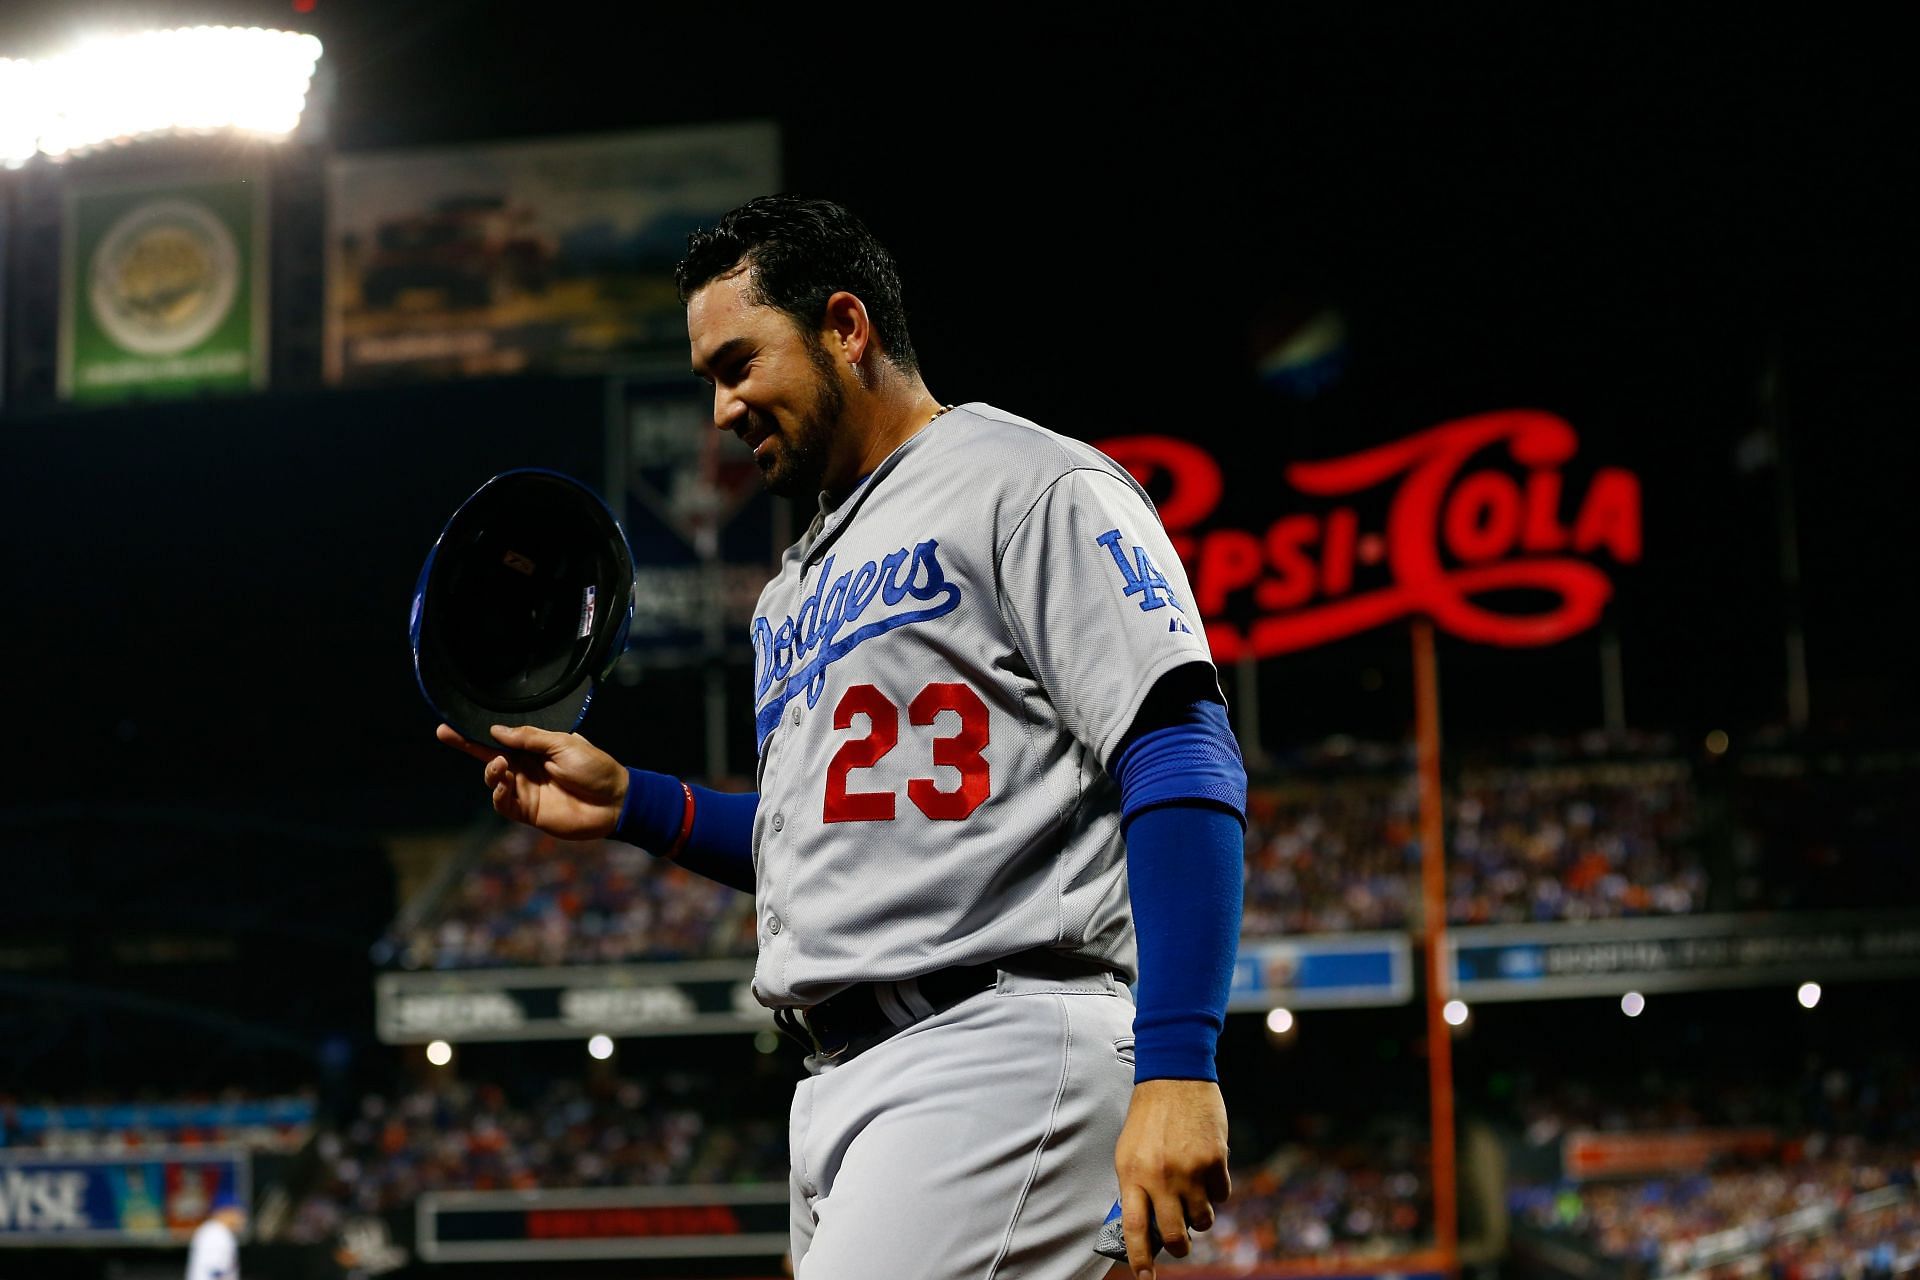 Adrian Gonzalez's European Vacation: Injured Dodgers 1B skips